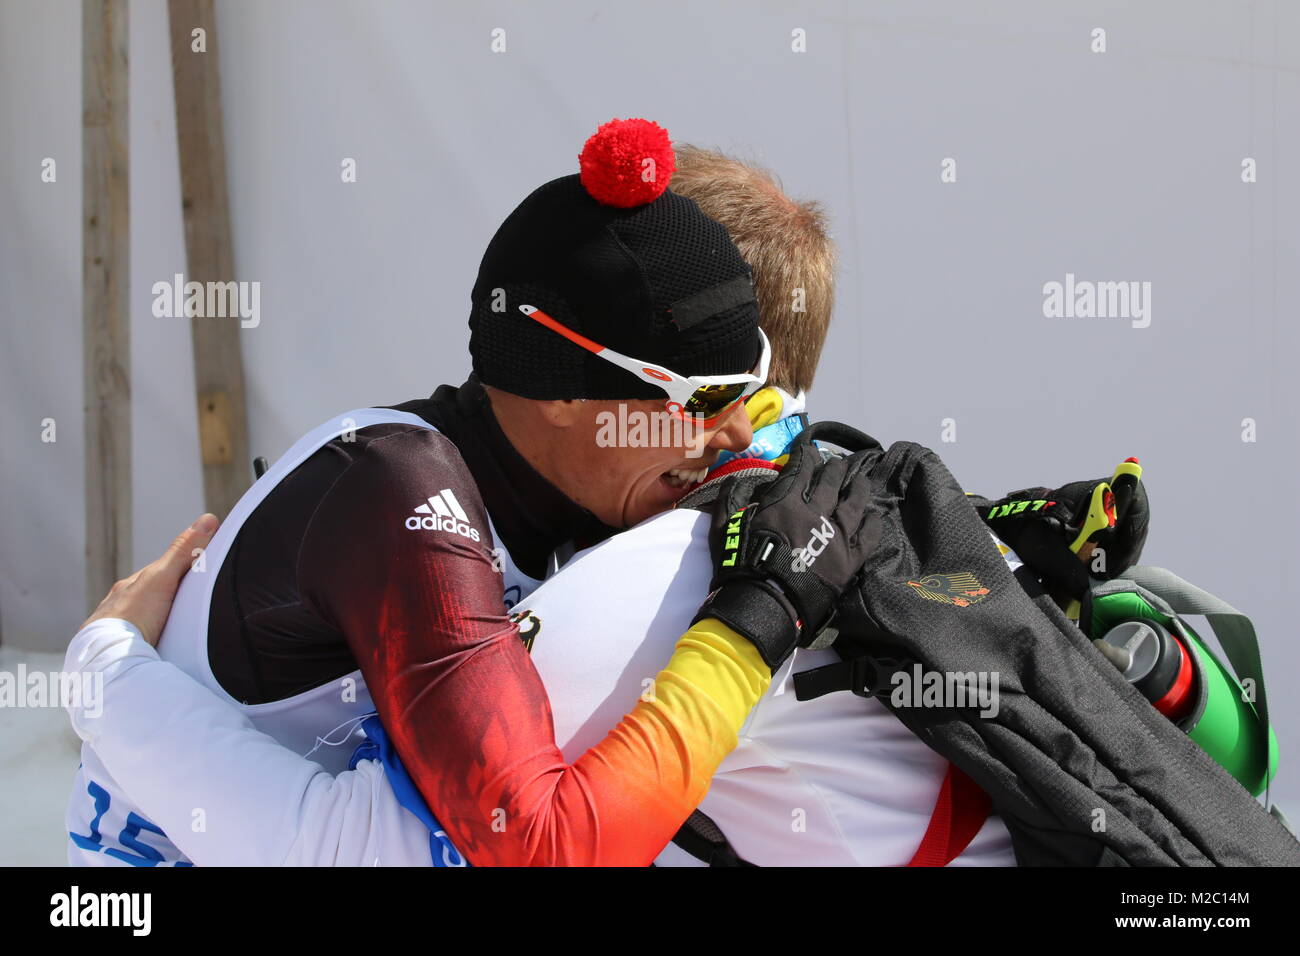 Andrea ESKAU herzt ihren Physiotherapeuten MEIWORM Skianglauf David Cross Country - 9. Jeux paralympiques 2014 / Wettkampftag Sotschi Jeux paralympiques d'hiver de Sotchi 2014 Banque D'Images